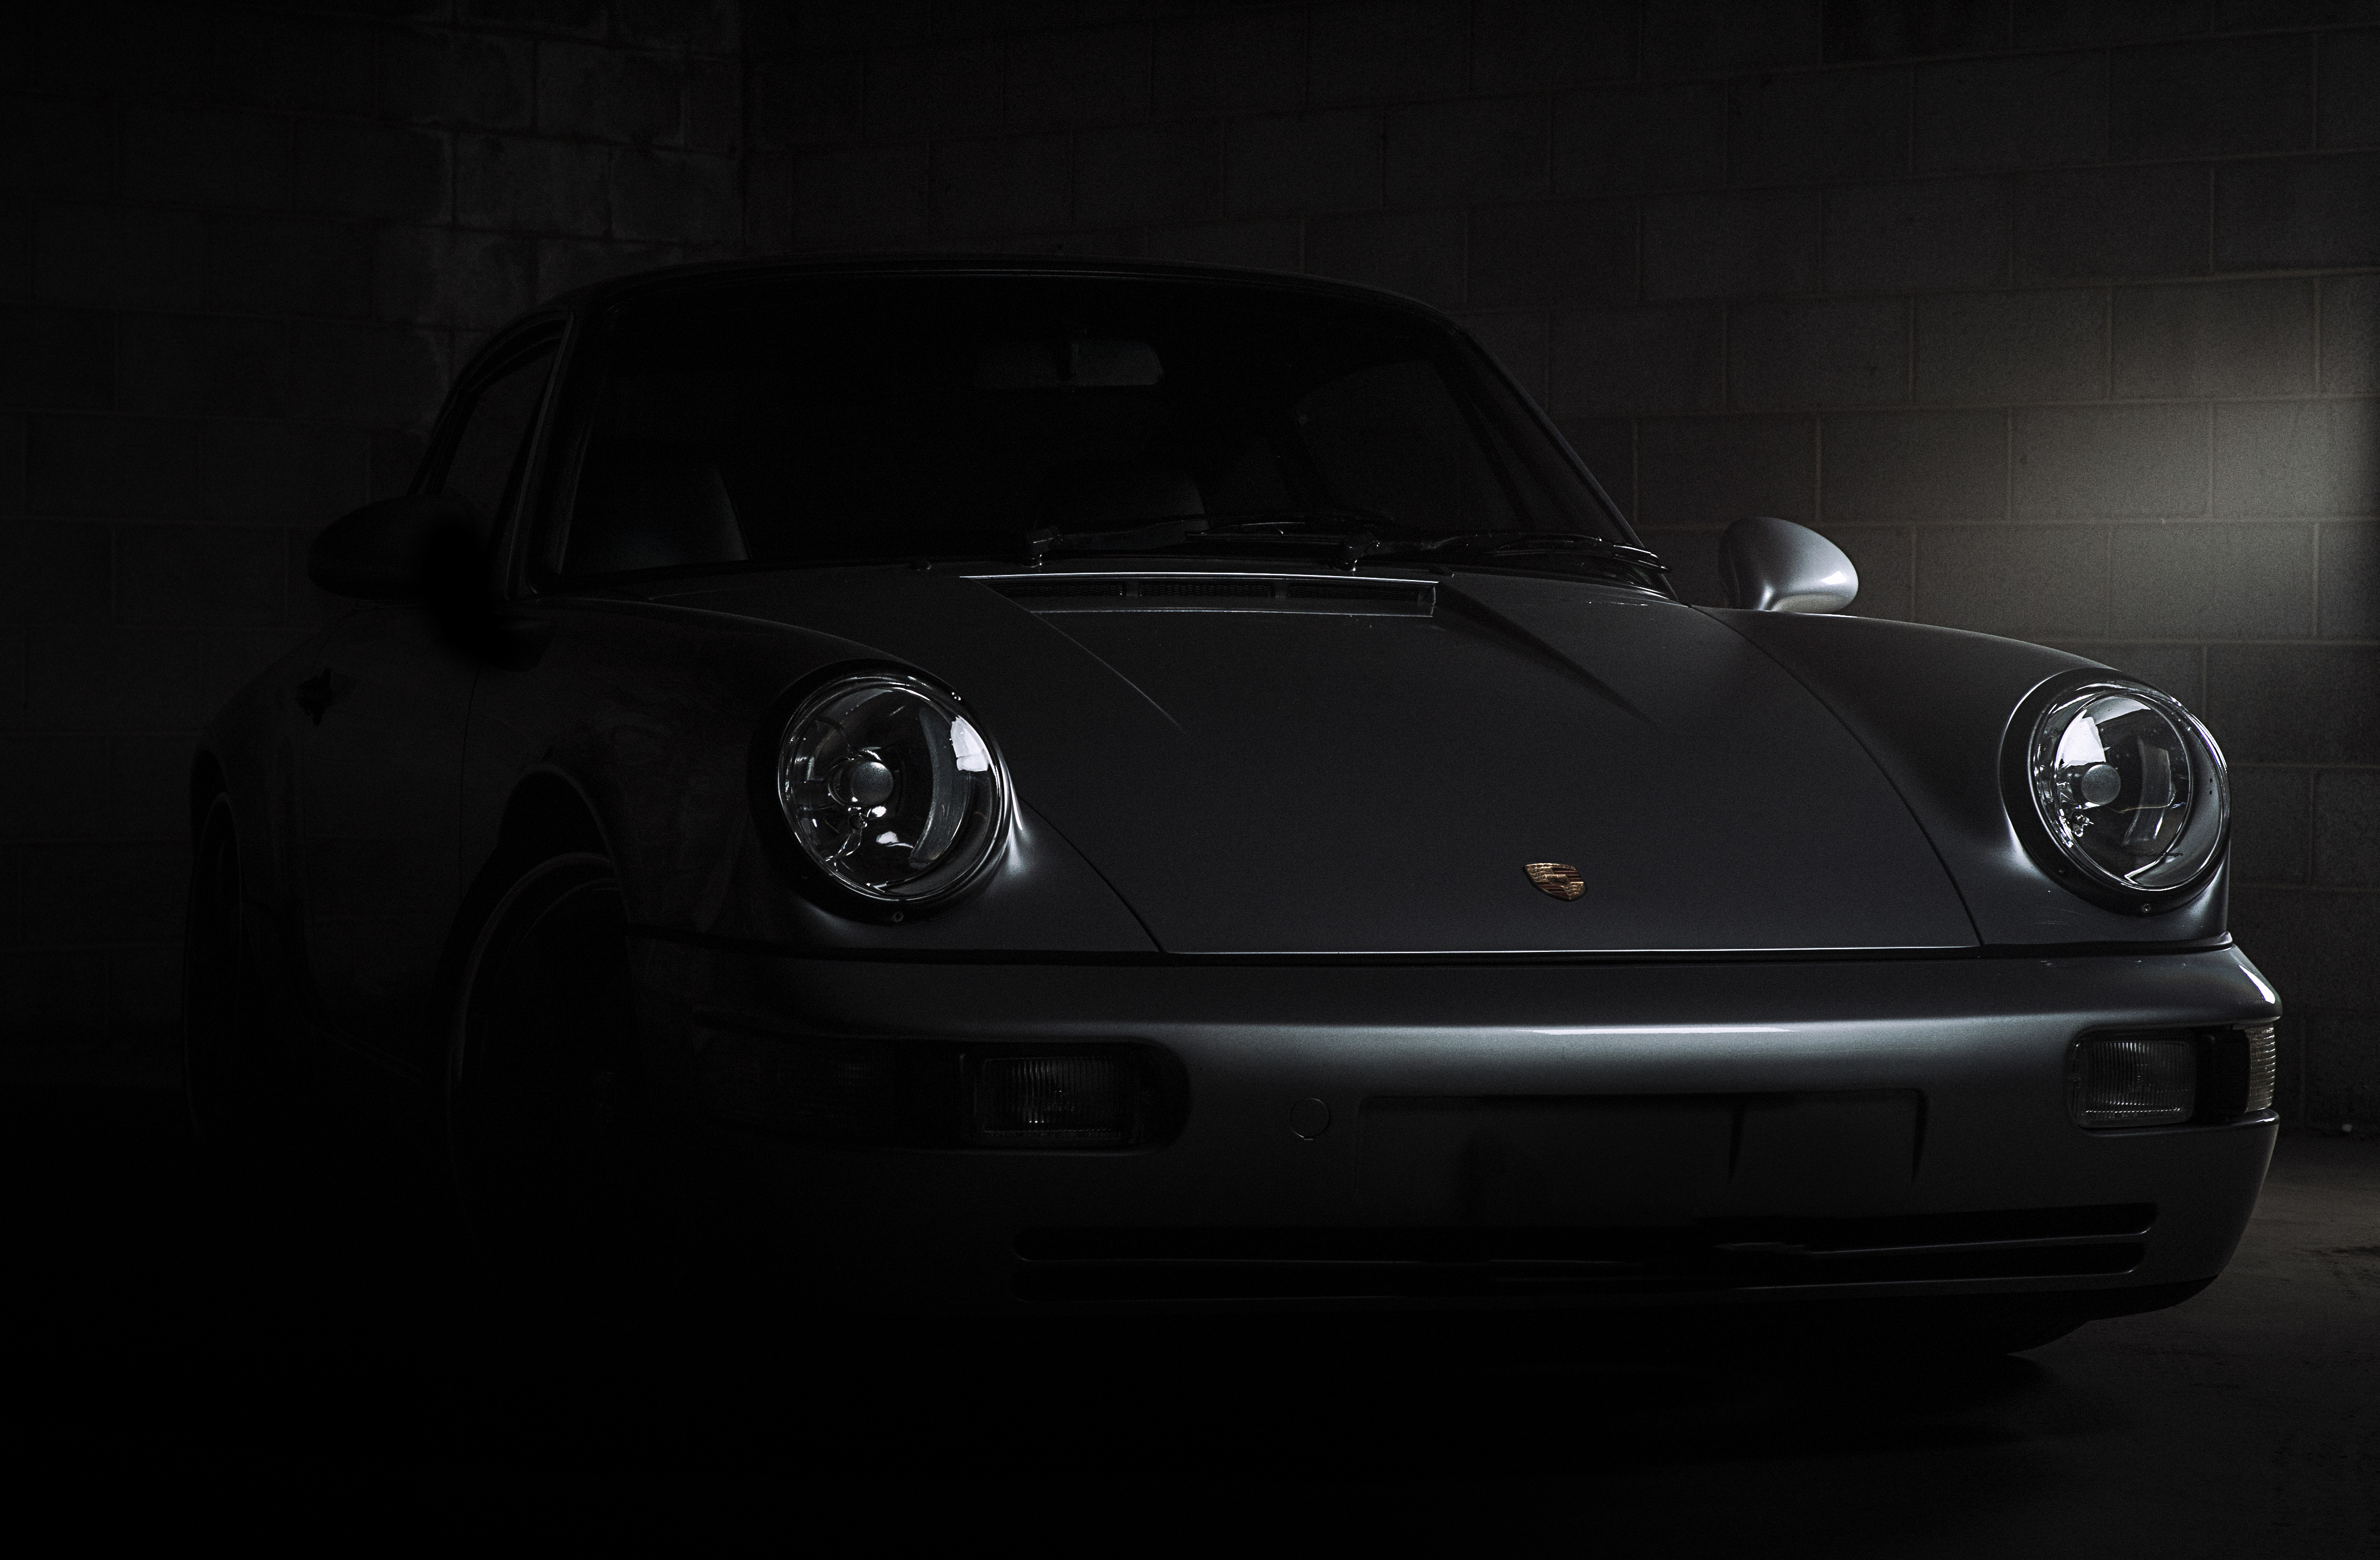 免费照片壁纸 保时捷 911 Carrera 在黑暗中的剪影